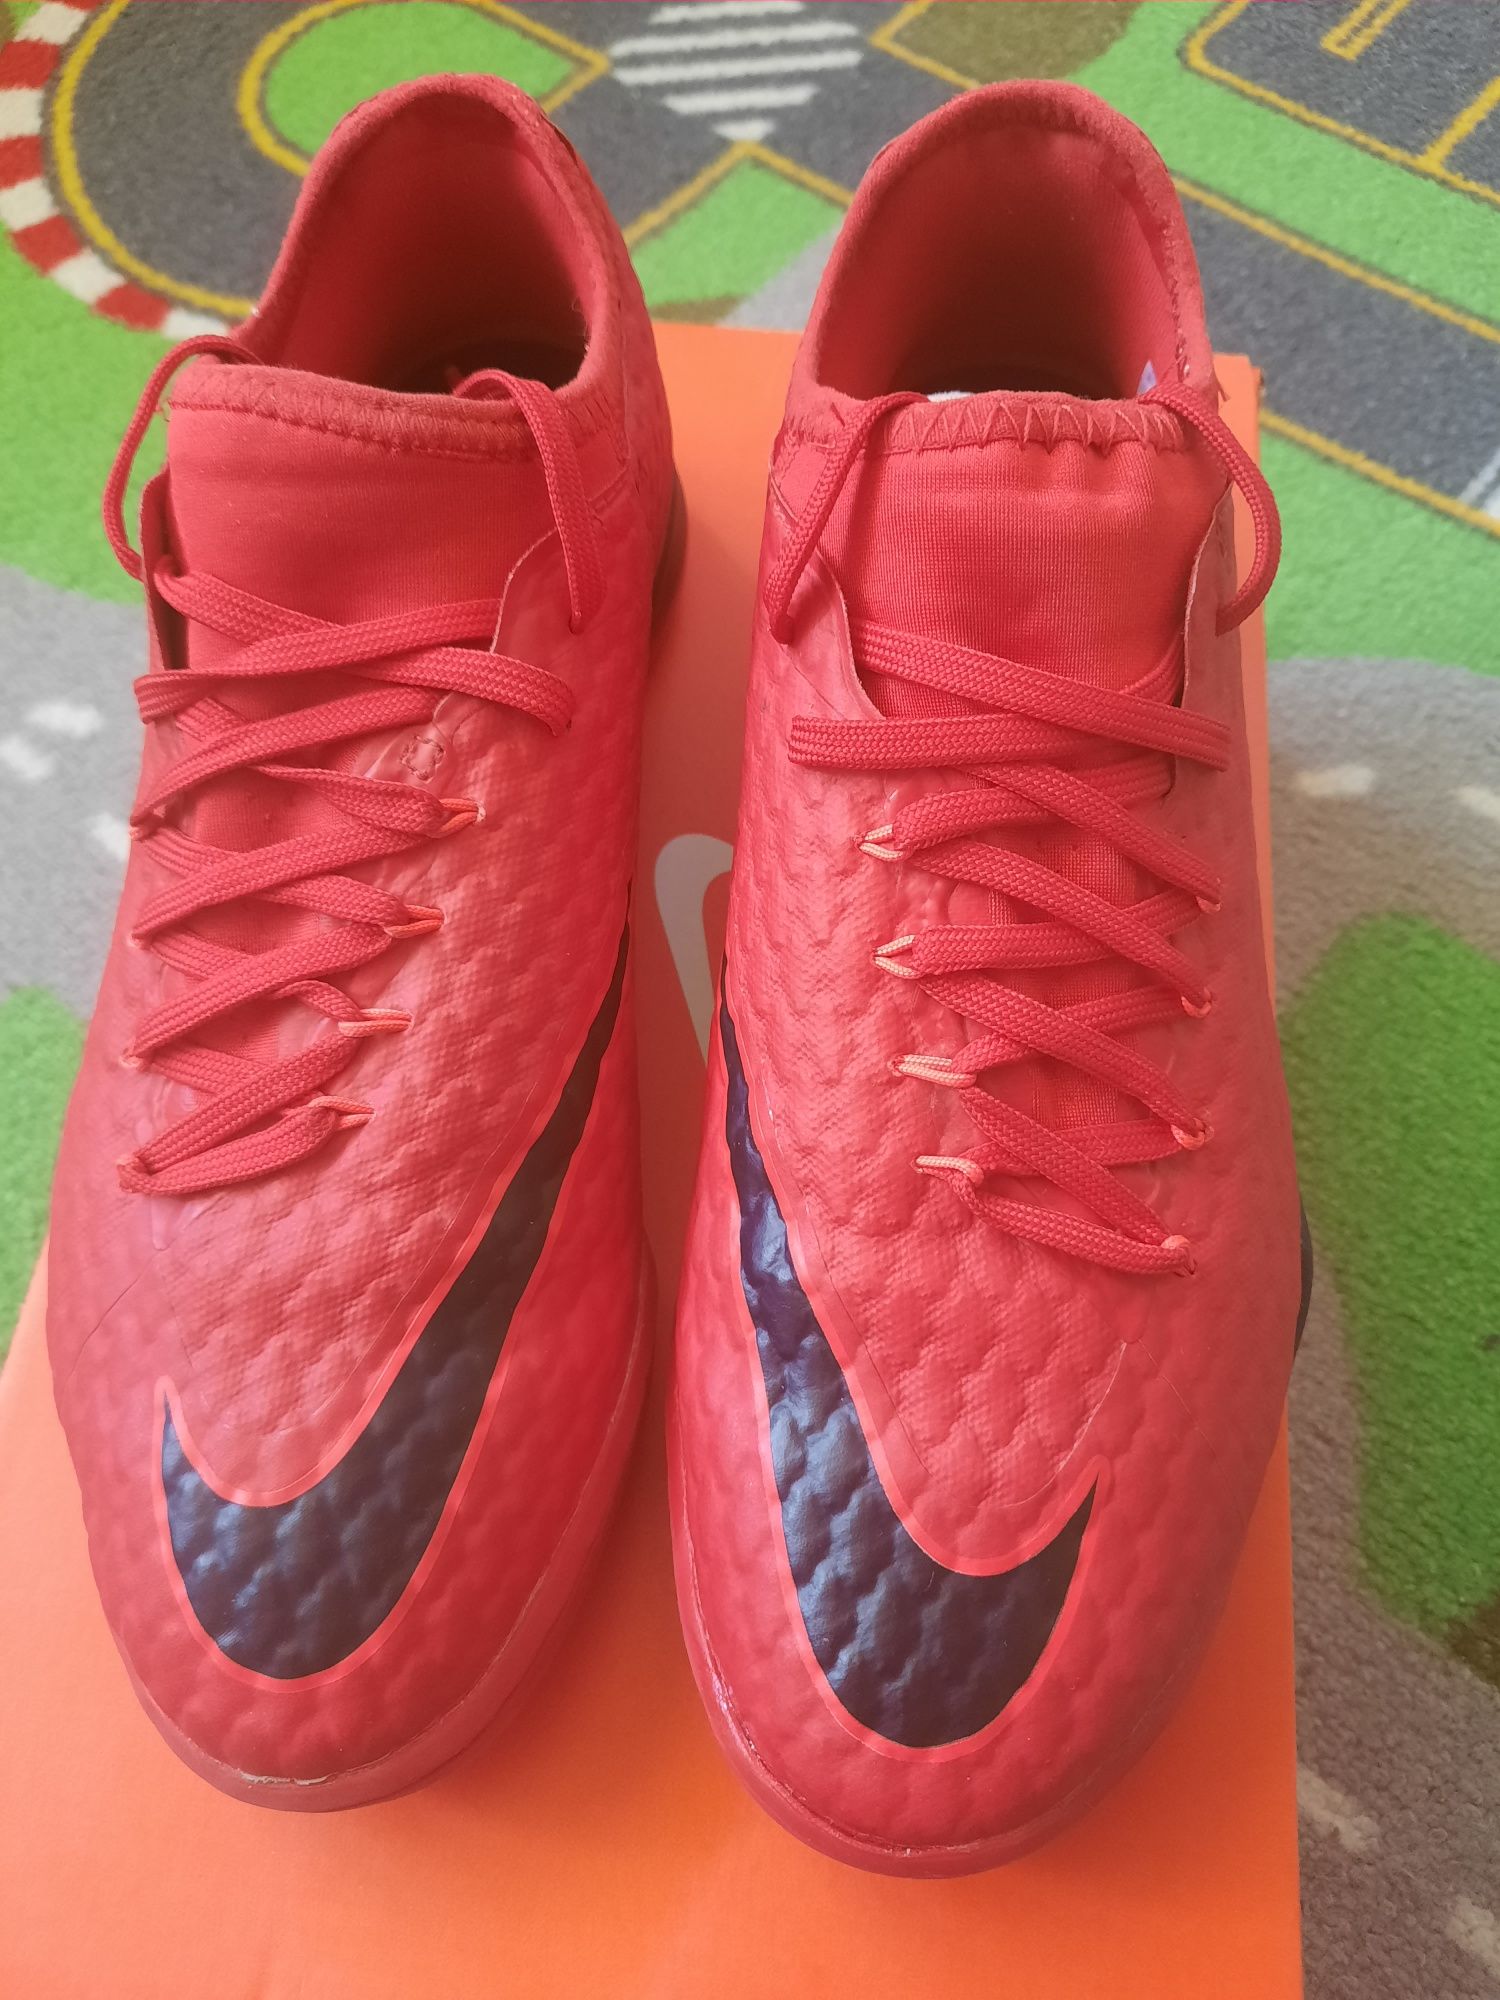 Продам Новую Футбольную Обувь Nike ( футзалки ) 40.5 р 25.5 см стелька